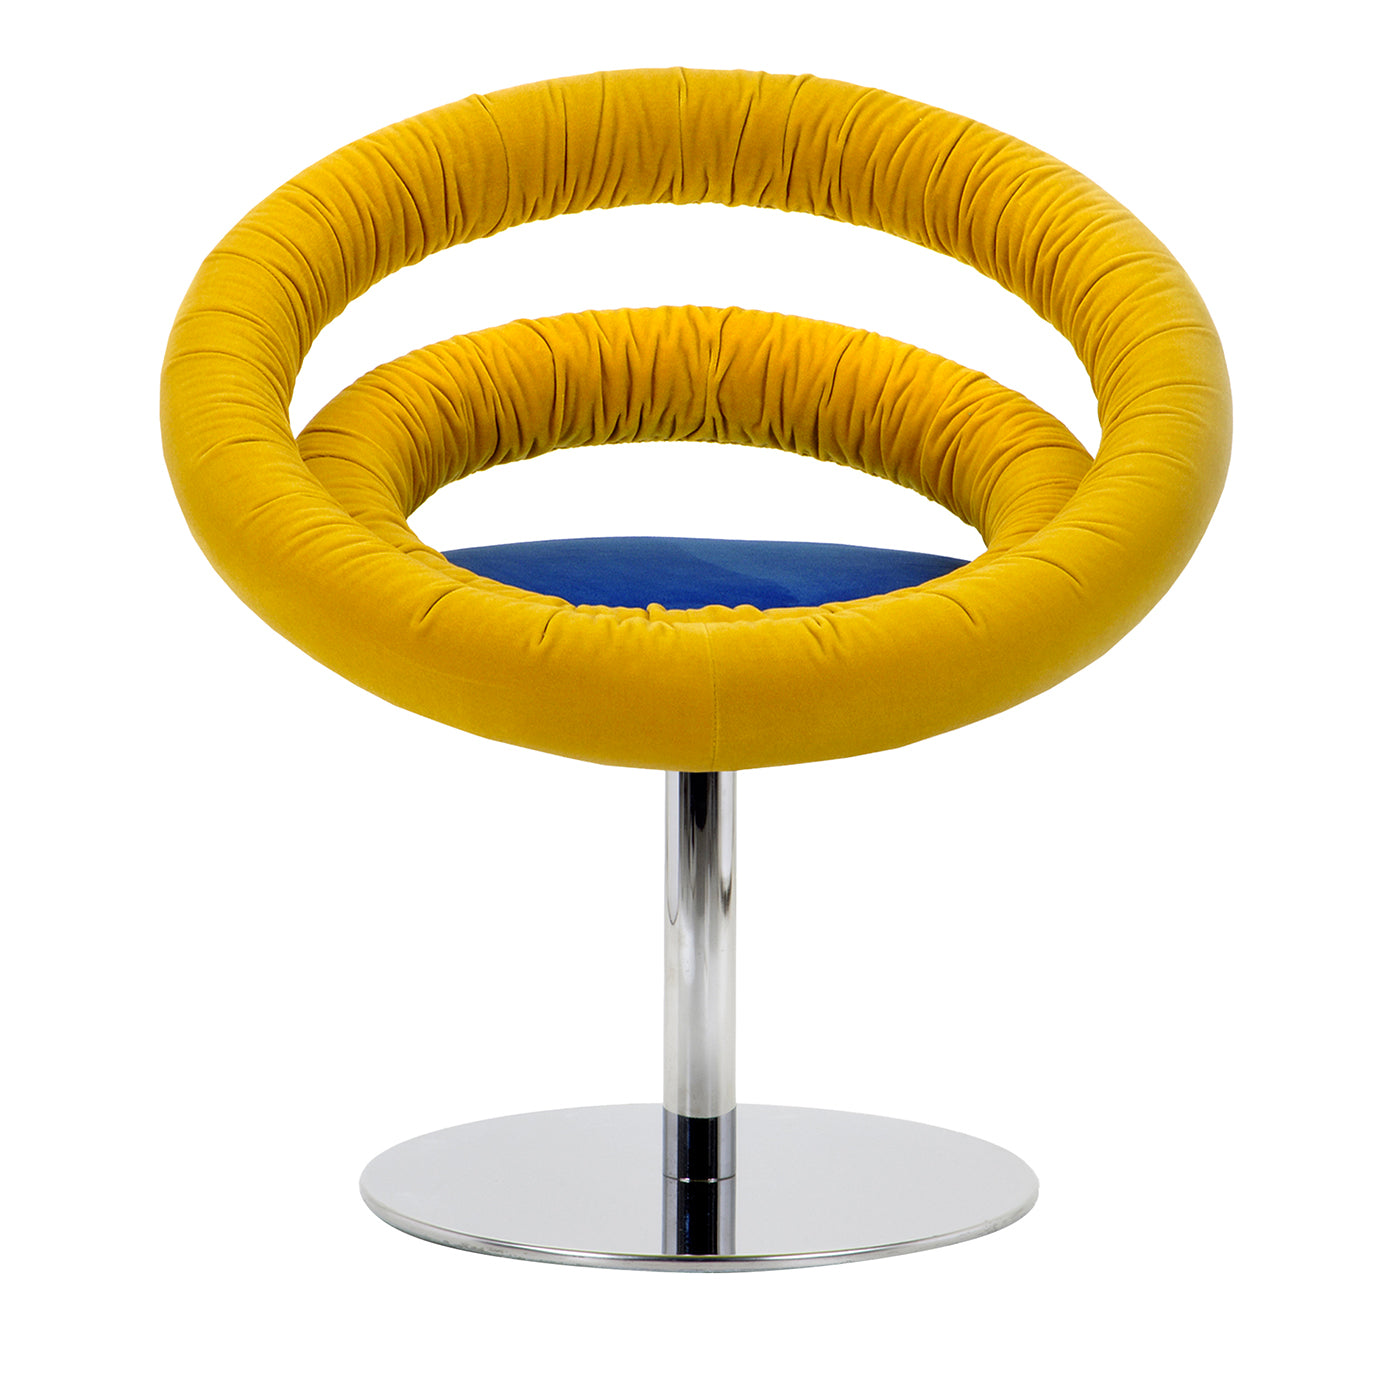 Circle B01 Yellow & Blue Armchair by R. Giacomucci & N. Cerasa - Main view